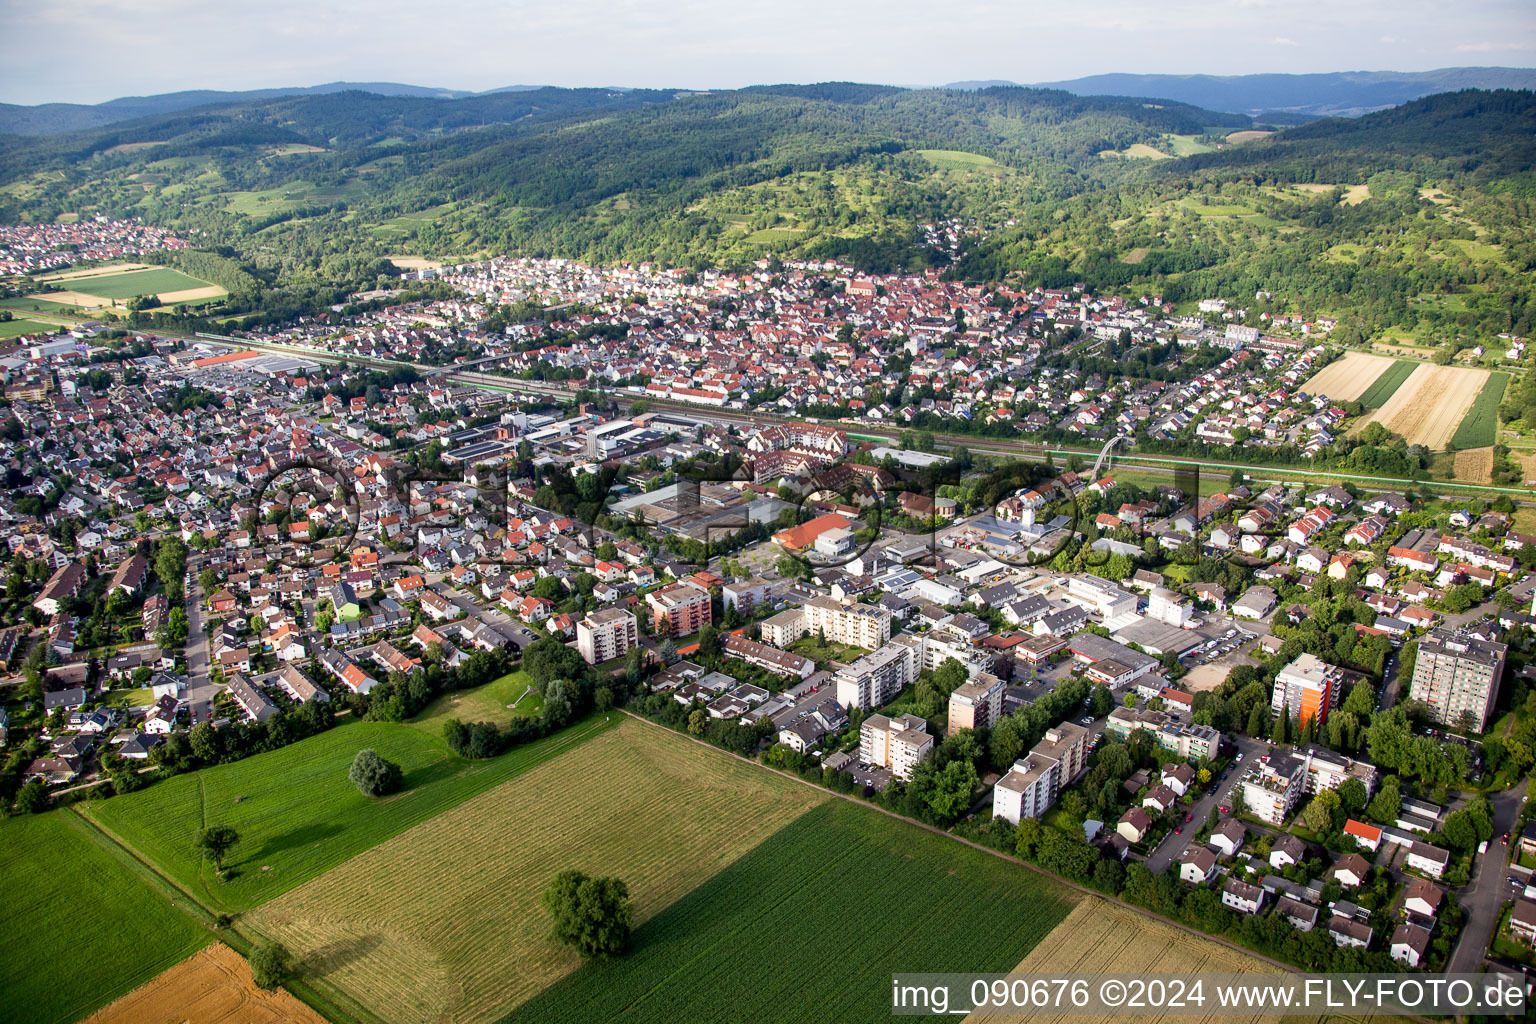 Vue aérienne de Champs agricoles et surfaces utilisables à Hemsbach dans le département Bade-Wurtemberg, Allemagne